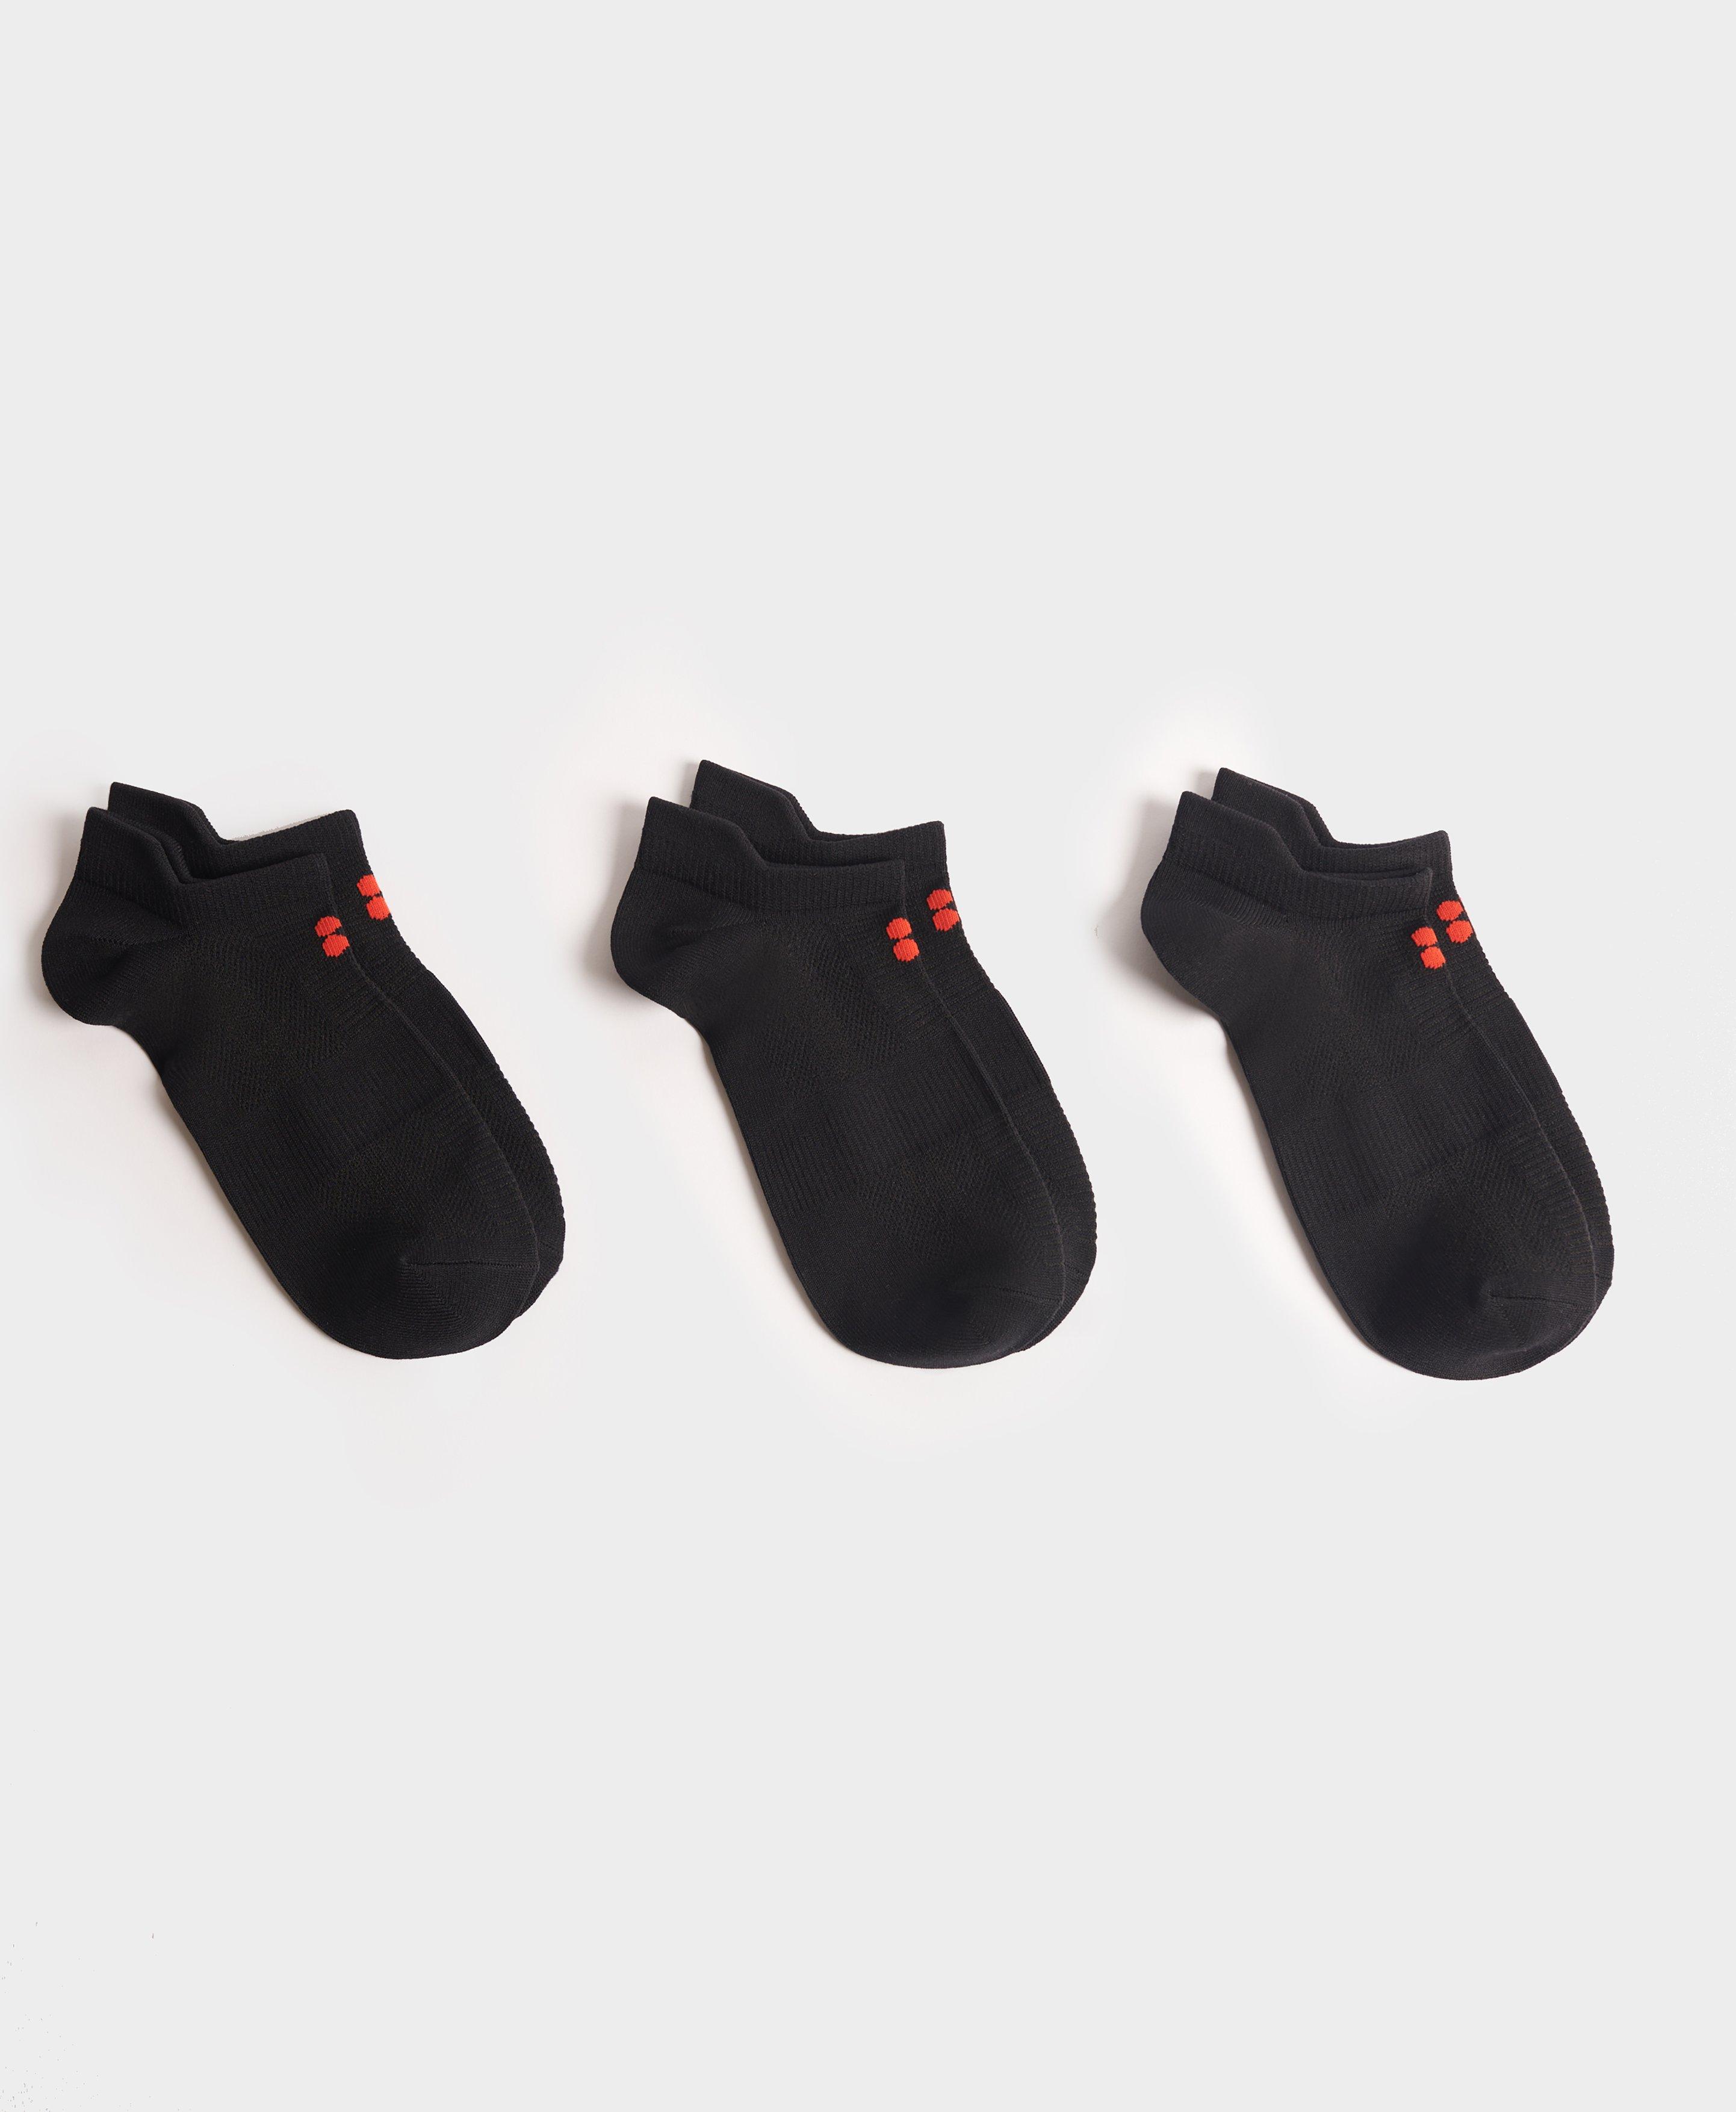 Yoga & Pilates Socks, Non Slip Grip Socks